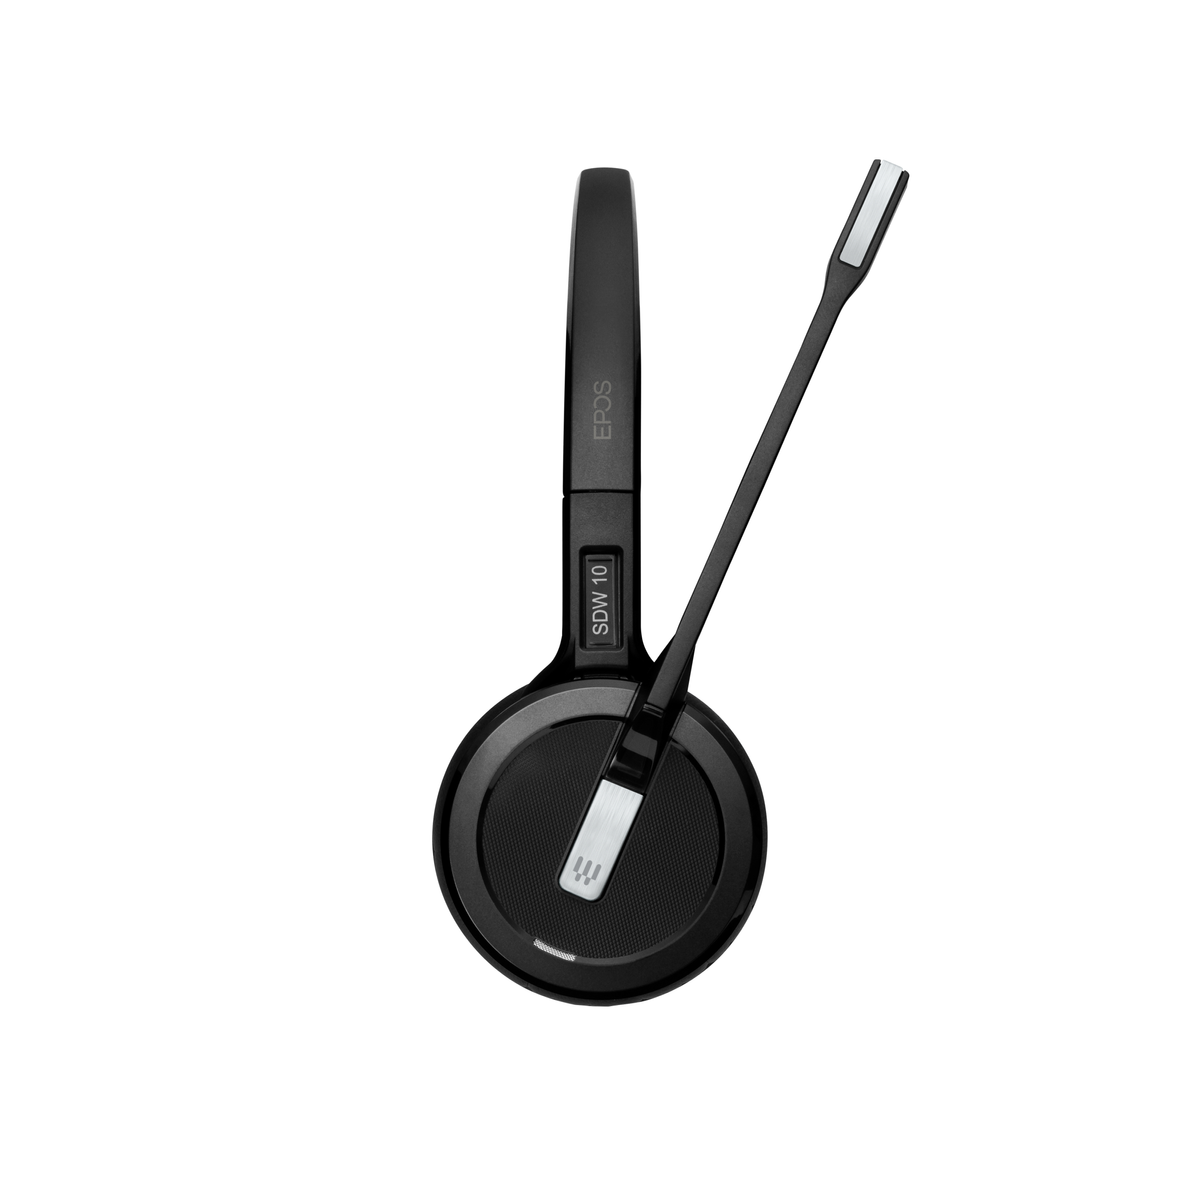 SENNHEISER IMPACT SDW 5013 Schwarz Mono-Headset - On-ear EU/UK/AUS